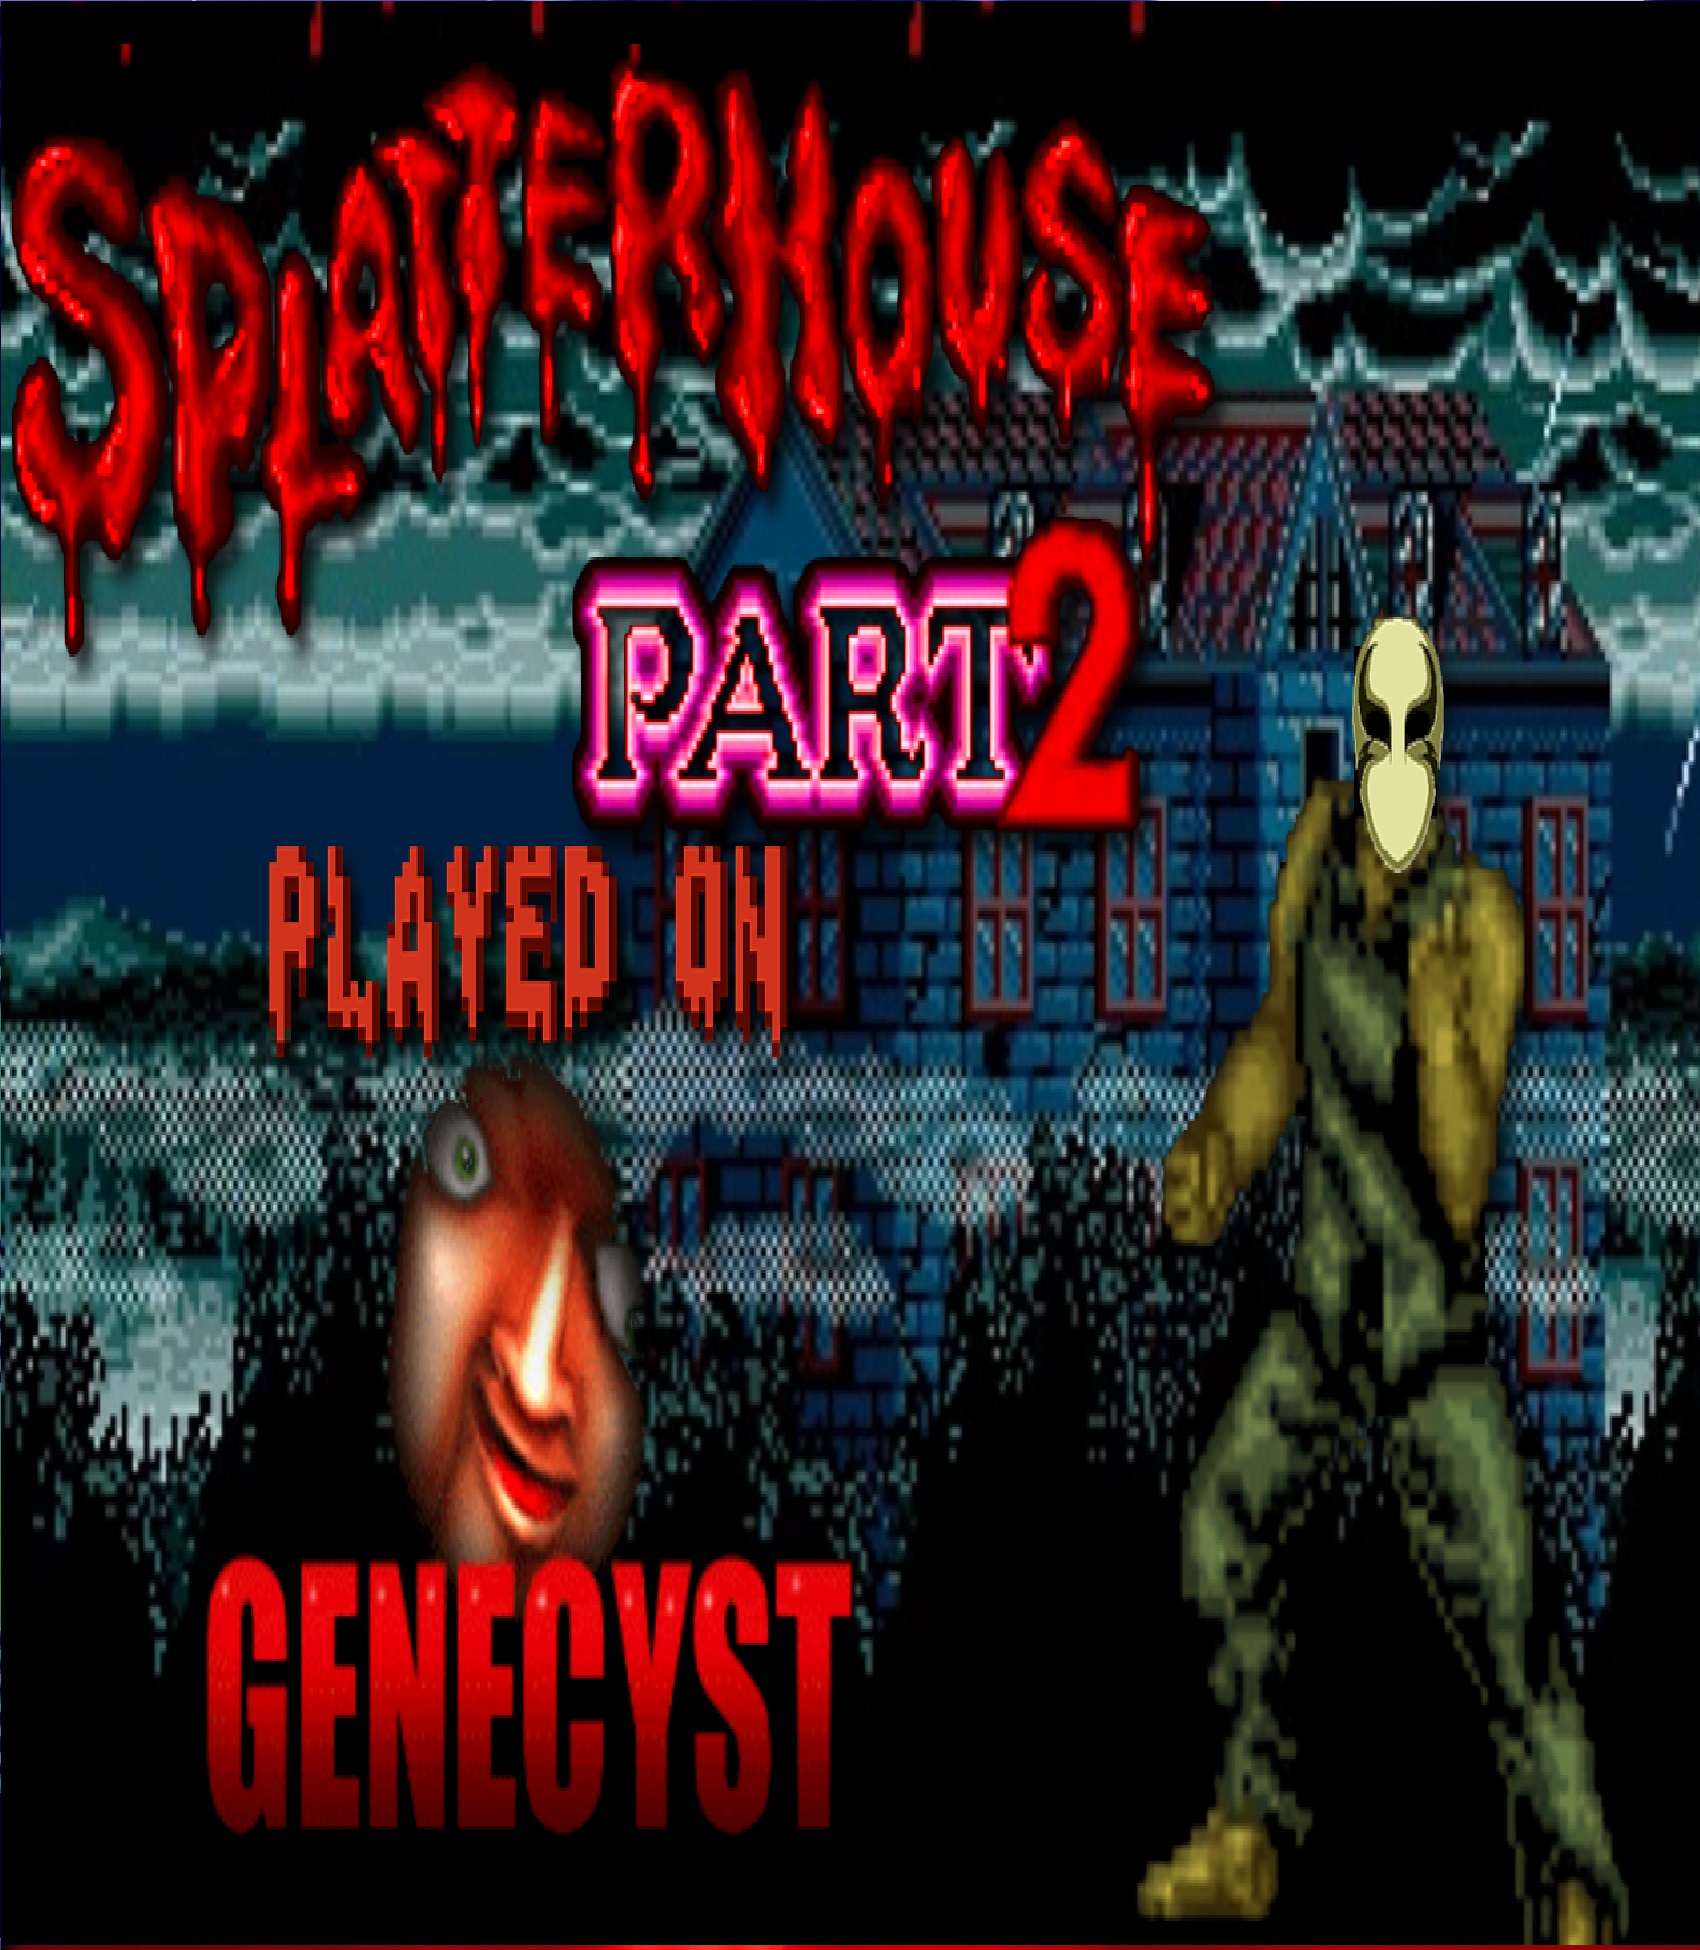 Splatterhouse 2 JP Colour Hack Played On Genecyst DOS Emulator(No Deaths)11/09/21